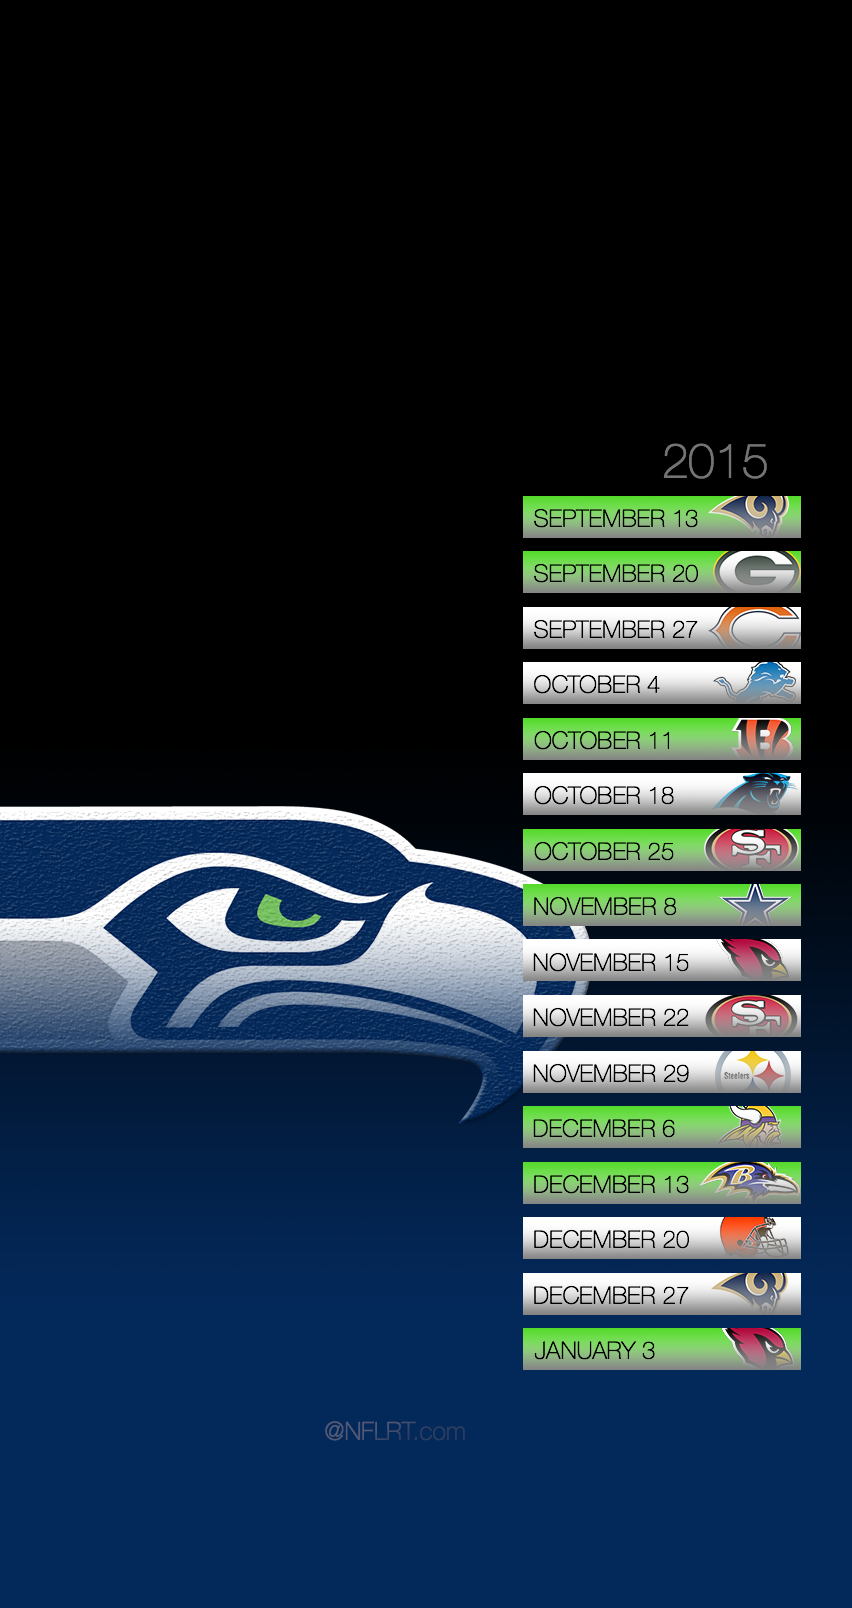 2015 NFL Schedule Wallpapers - of 8 - NFLRT